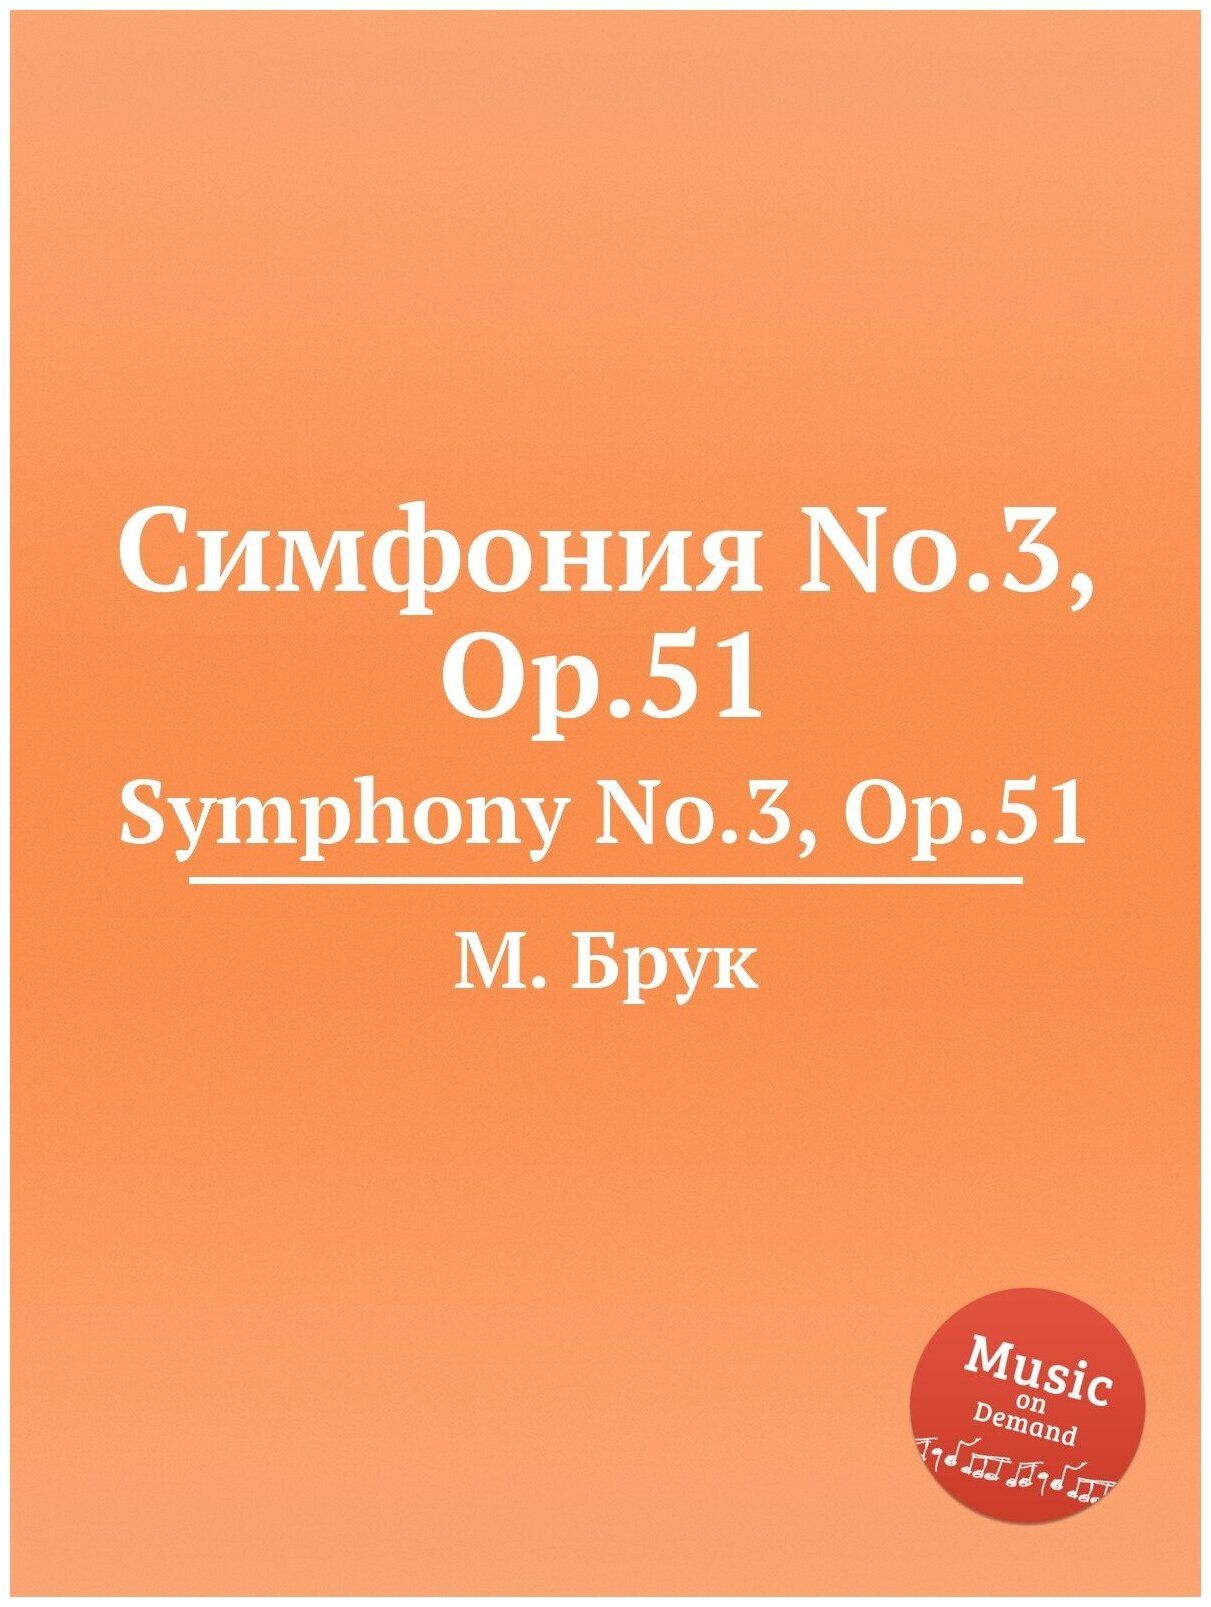 Симфония No.3 Op.51. Symphony No.3 Op.51